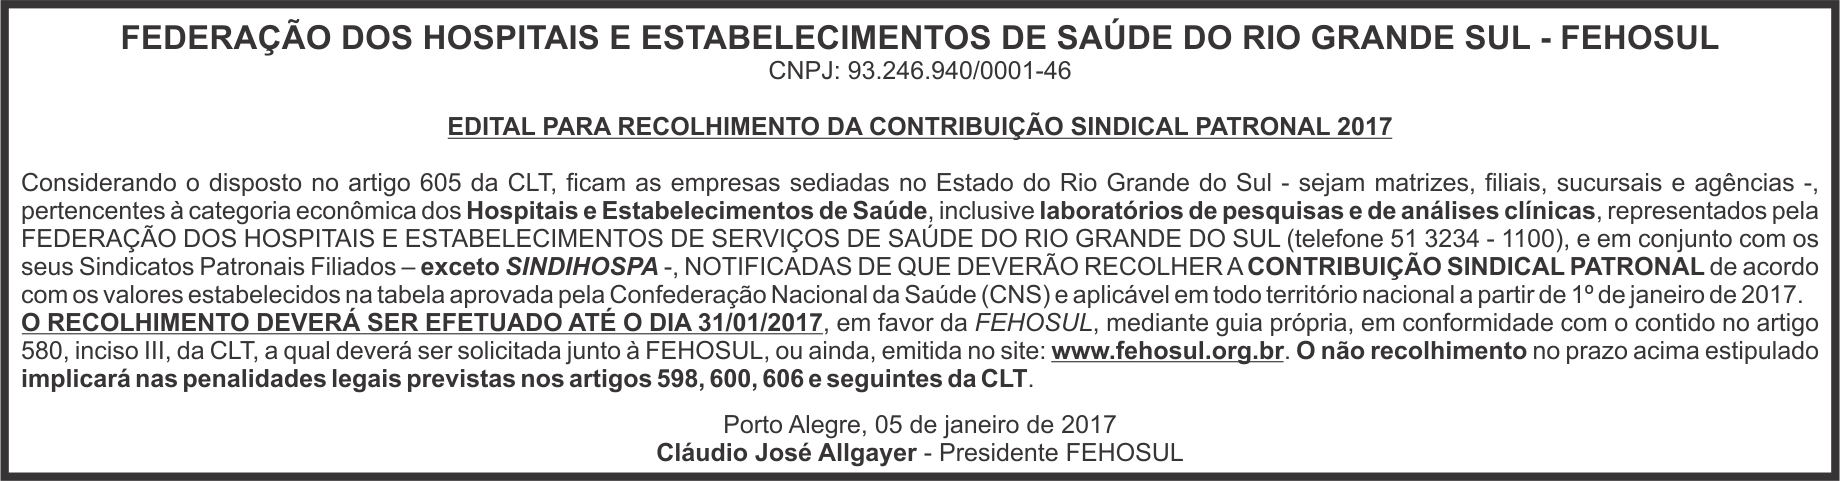 01_05_2017_edital_recolhimento_contribuição_Jornal_Comercio